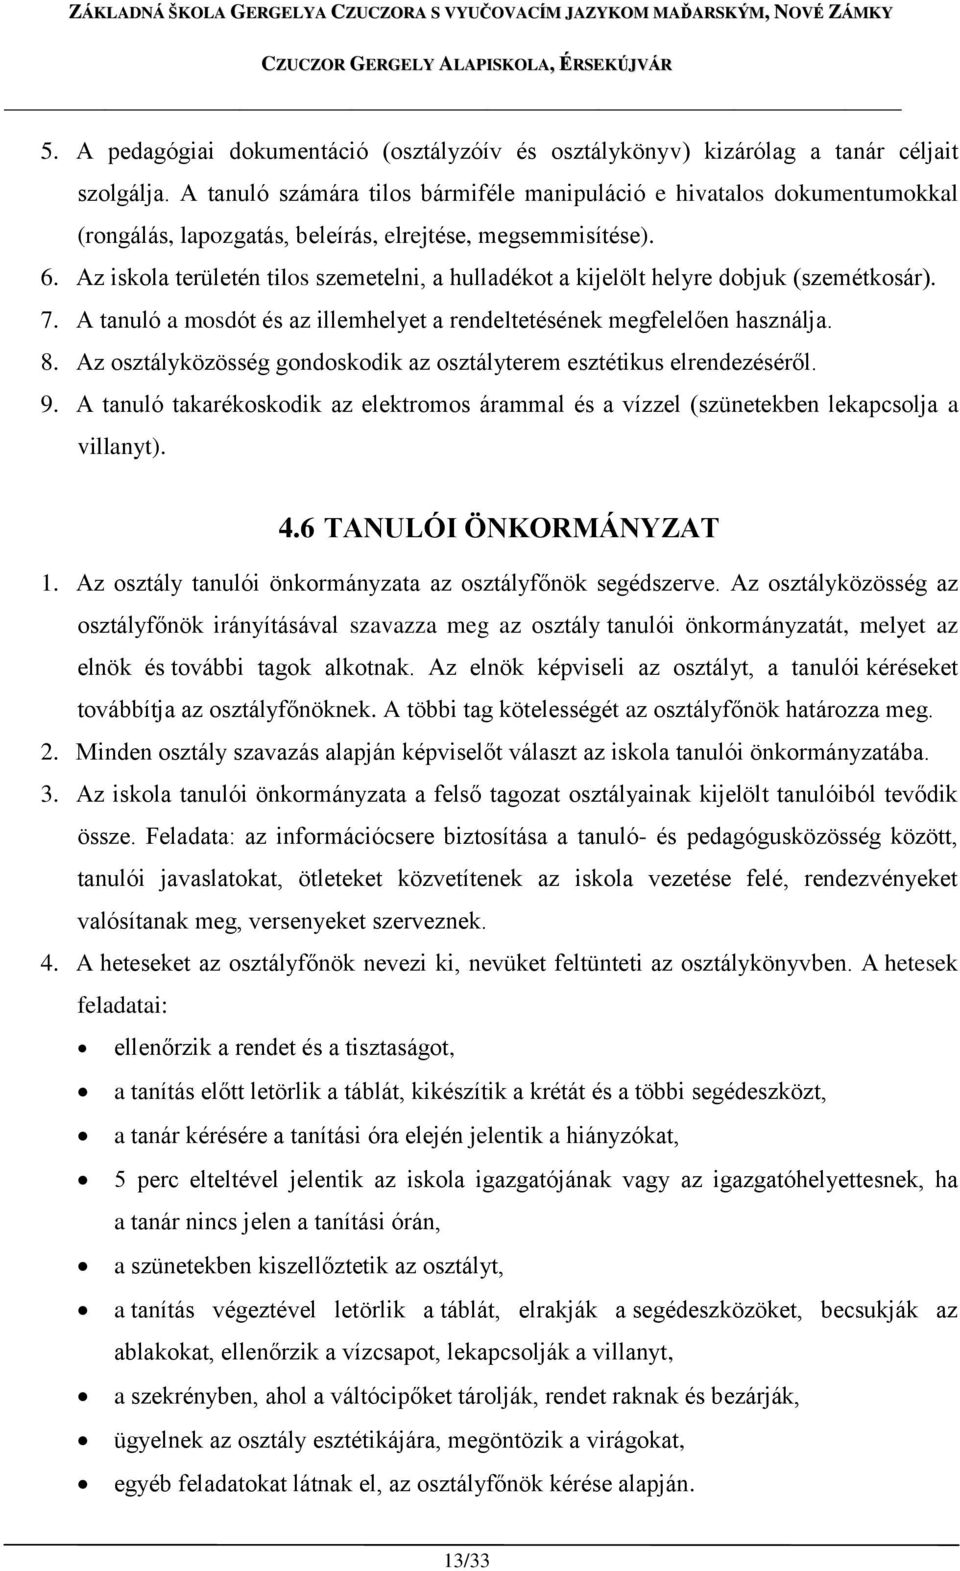 ISKOLAI RENDTARTÁS (Házirend) - PDF Ingyenes letöltés